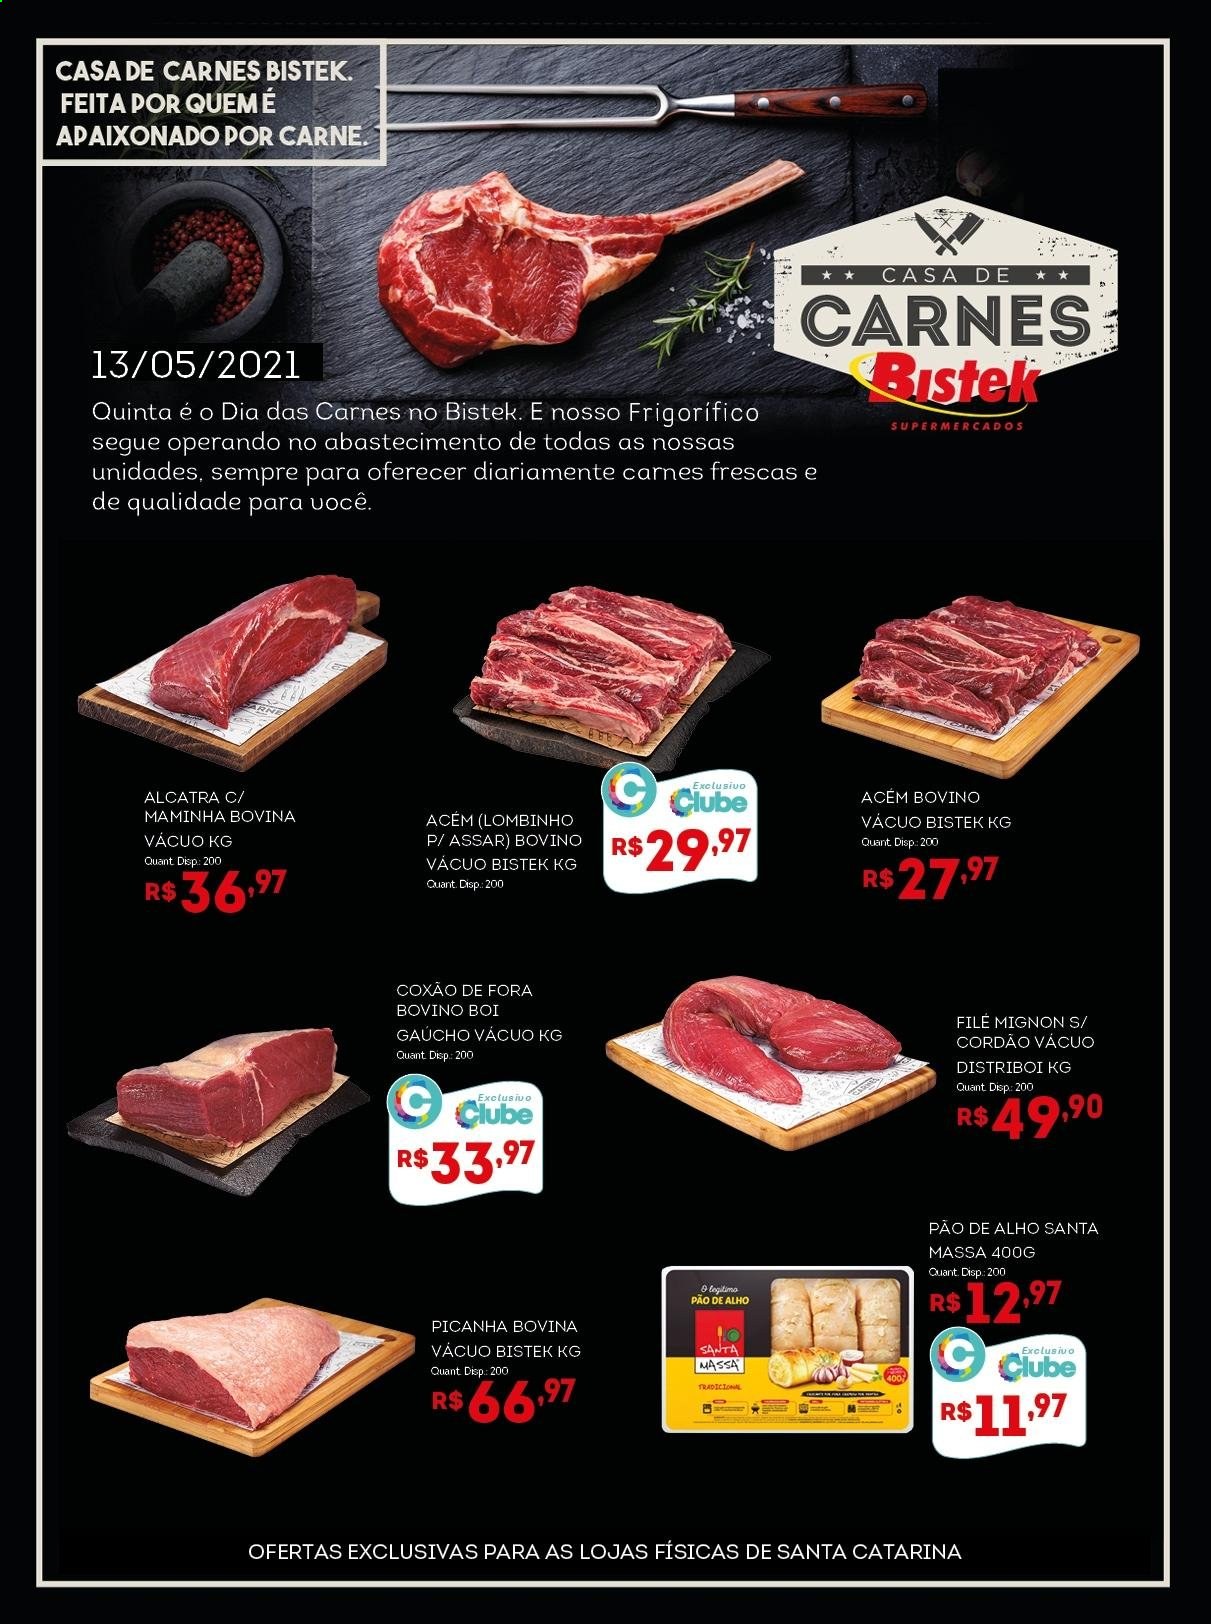 thumbnail - Folheto Bistek Supermercados - 13/05/2021 - 13/05/2021 - Produtos em promoção - picanha, carne, pão, pão de alho, file-mignon, alcatra. Página 1.